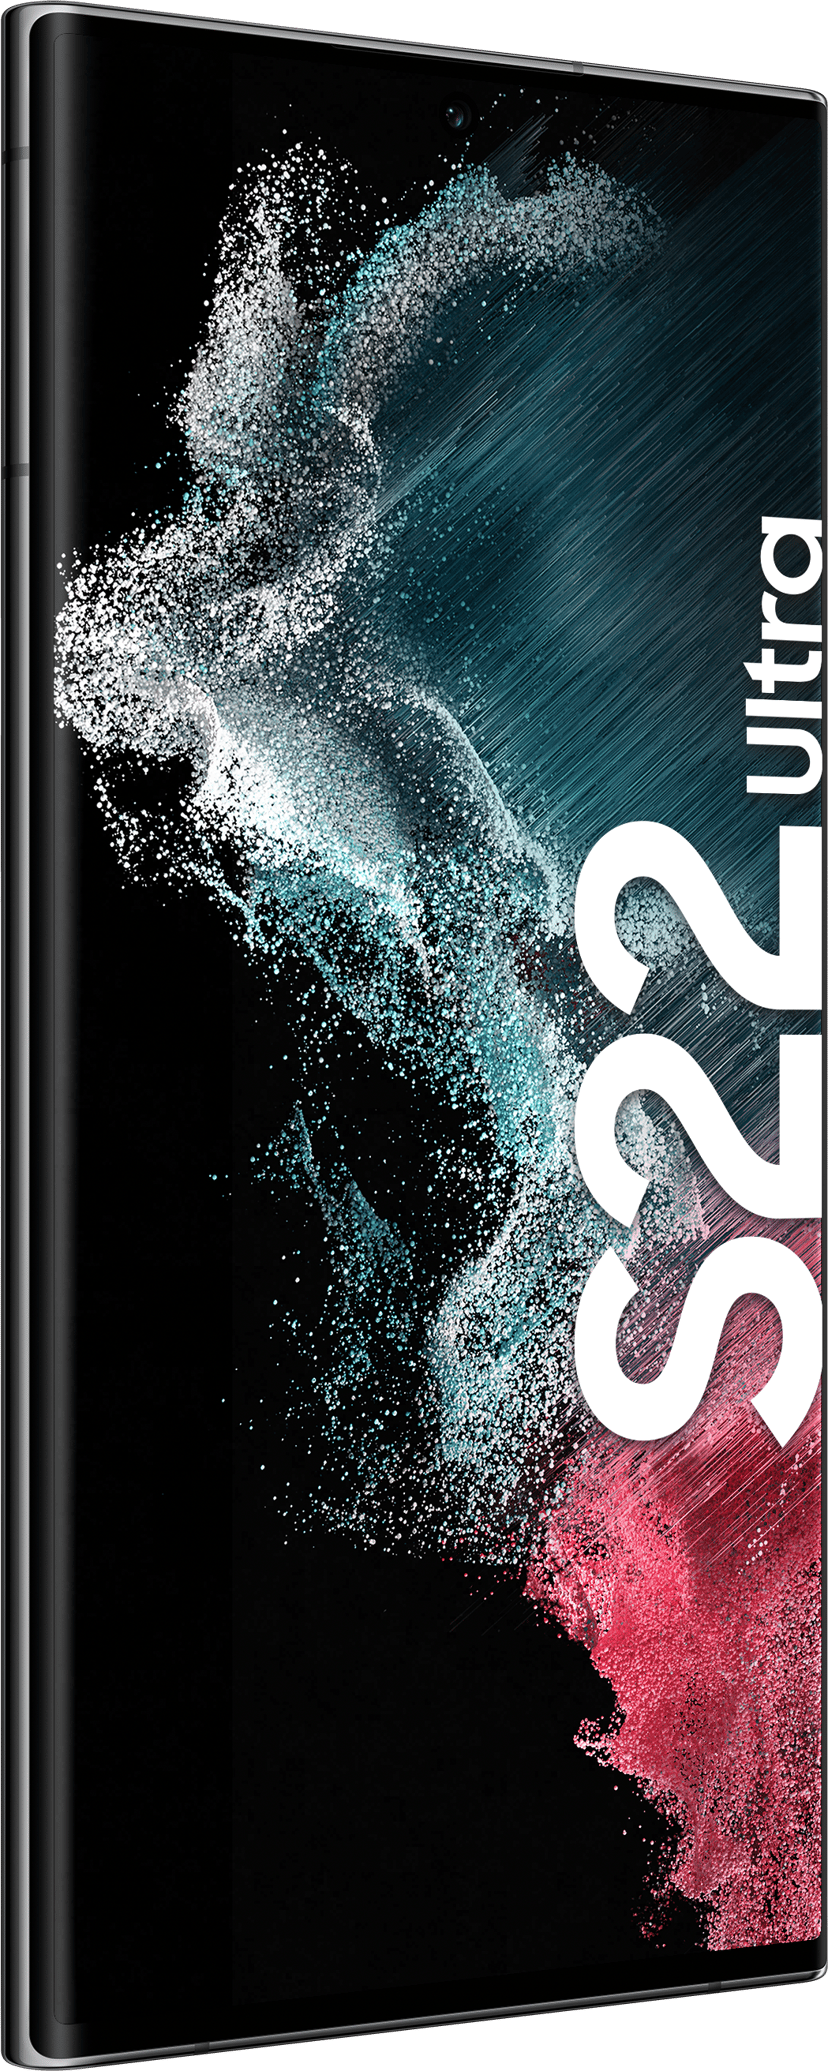 Samsung Galaxy S22 Ultra 512GB Dual-SIM Fantom sort